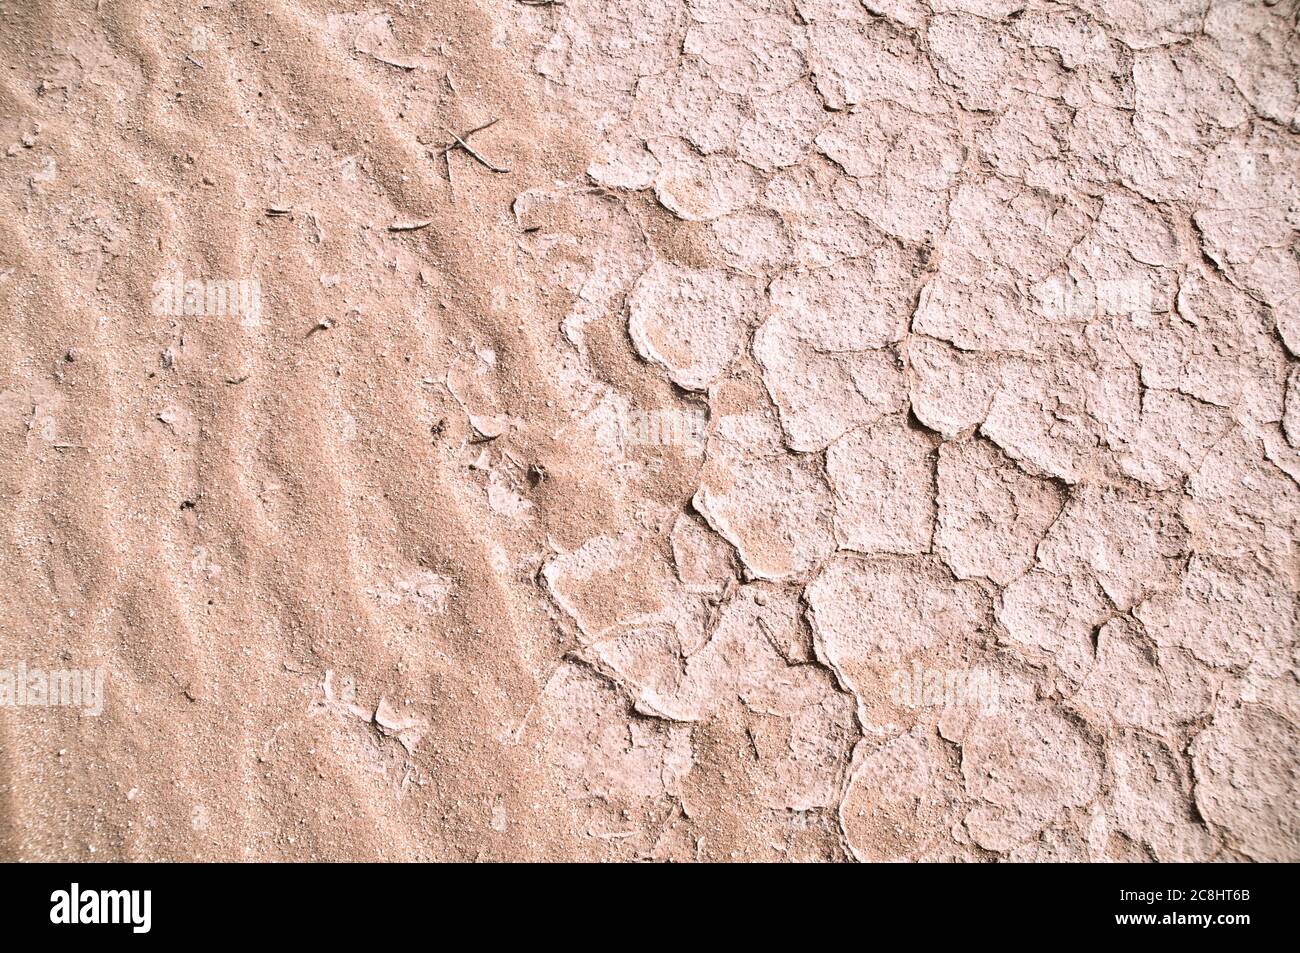 Boue blanche sèche, parchée et fissurée dans le désert oriental de la région de Badia, Wadi Dahek, Royaume hachémite de Jordanie. Banque D'Images